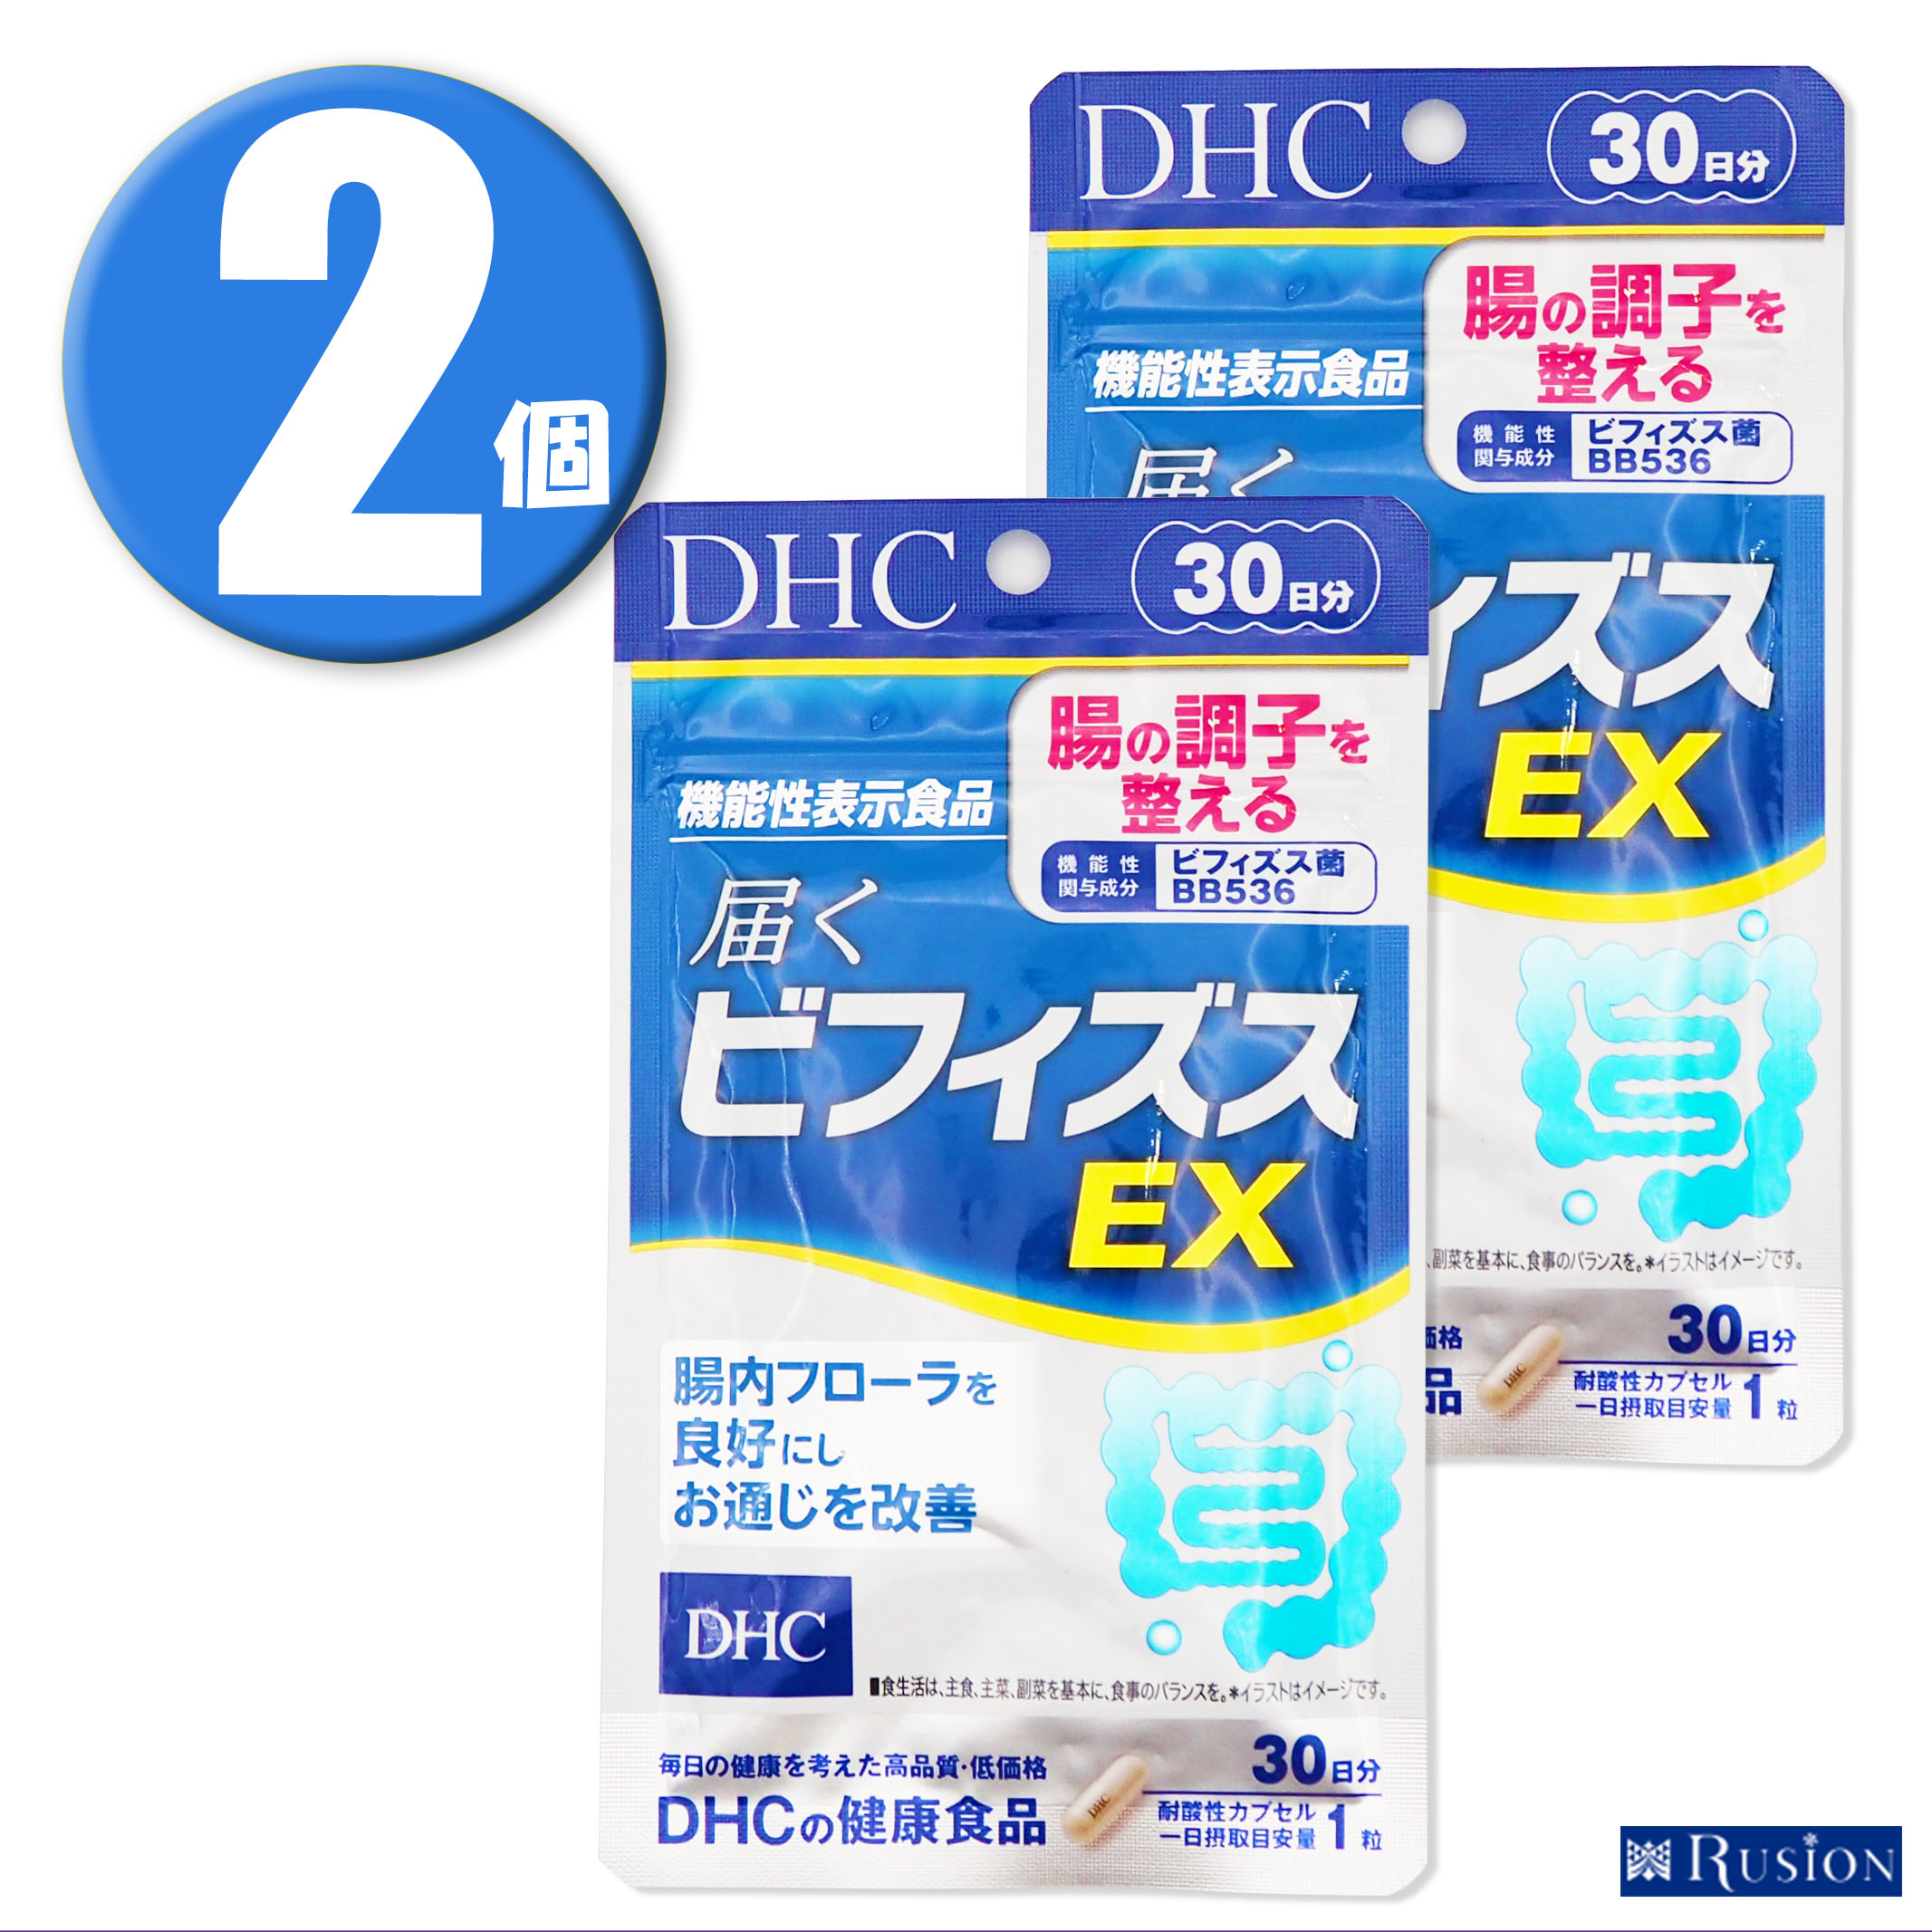 日本製・綿100% DHC 届くビフィズスEX 2個セット 通販